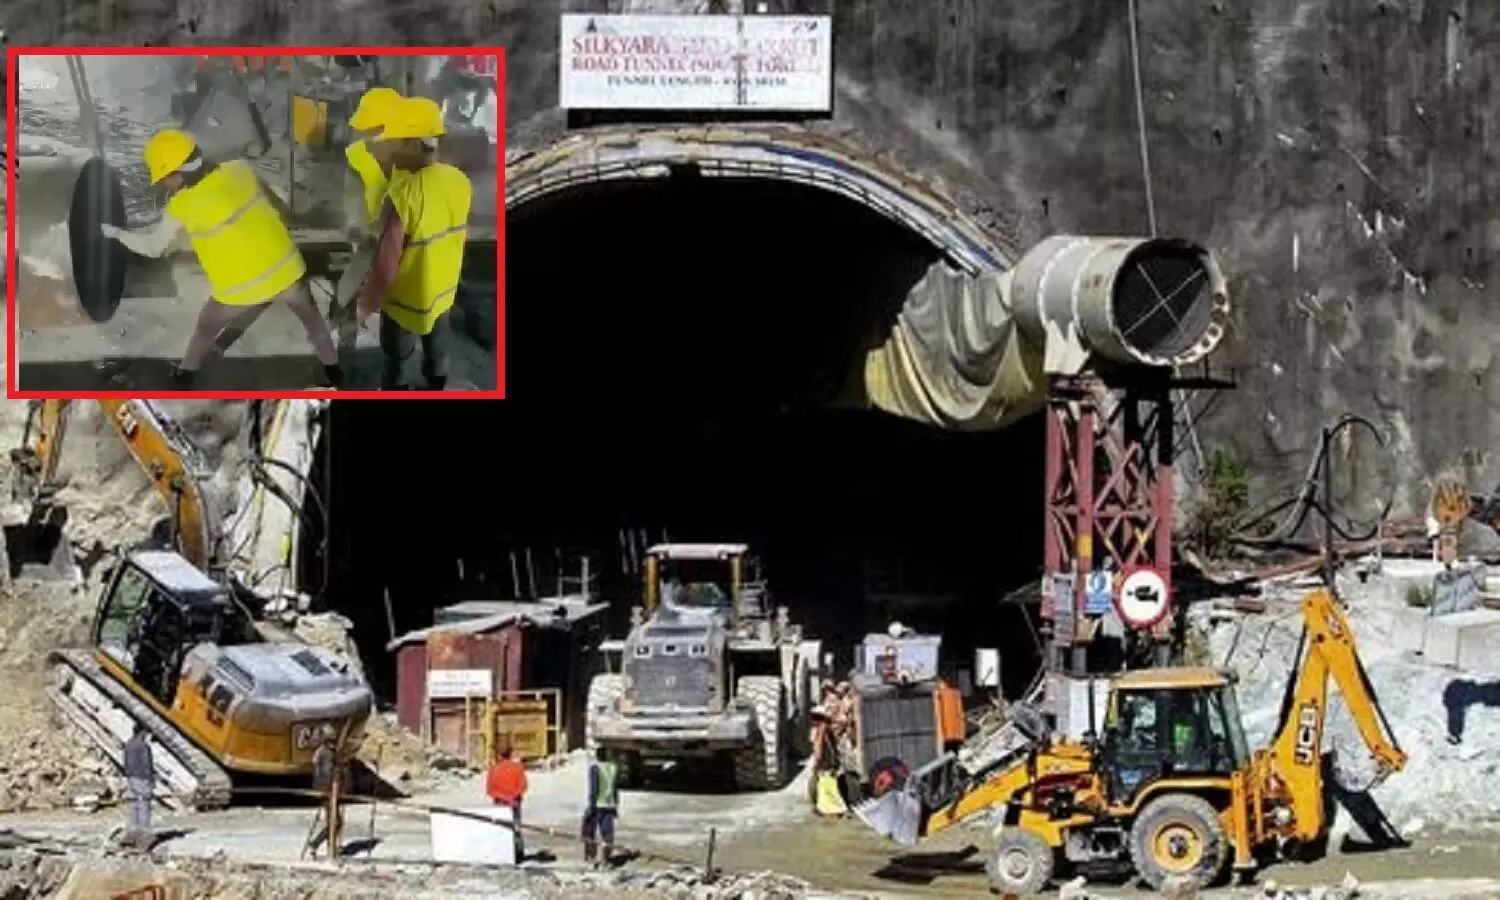 Uttarkashi Tunnel Rescue : हम सुरंगों के बीच अपनी जिंदगी-घुटन की कल्पना और भविष्य के बीच सिल्क्यारा की सुरंग पर बैठे हैं नजर गड़ाये...